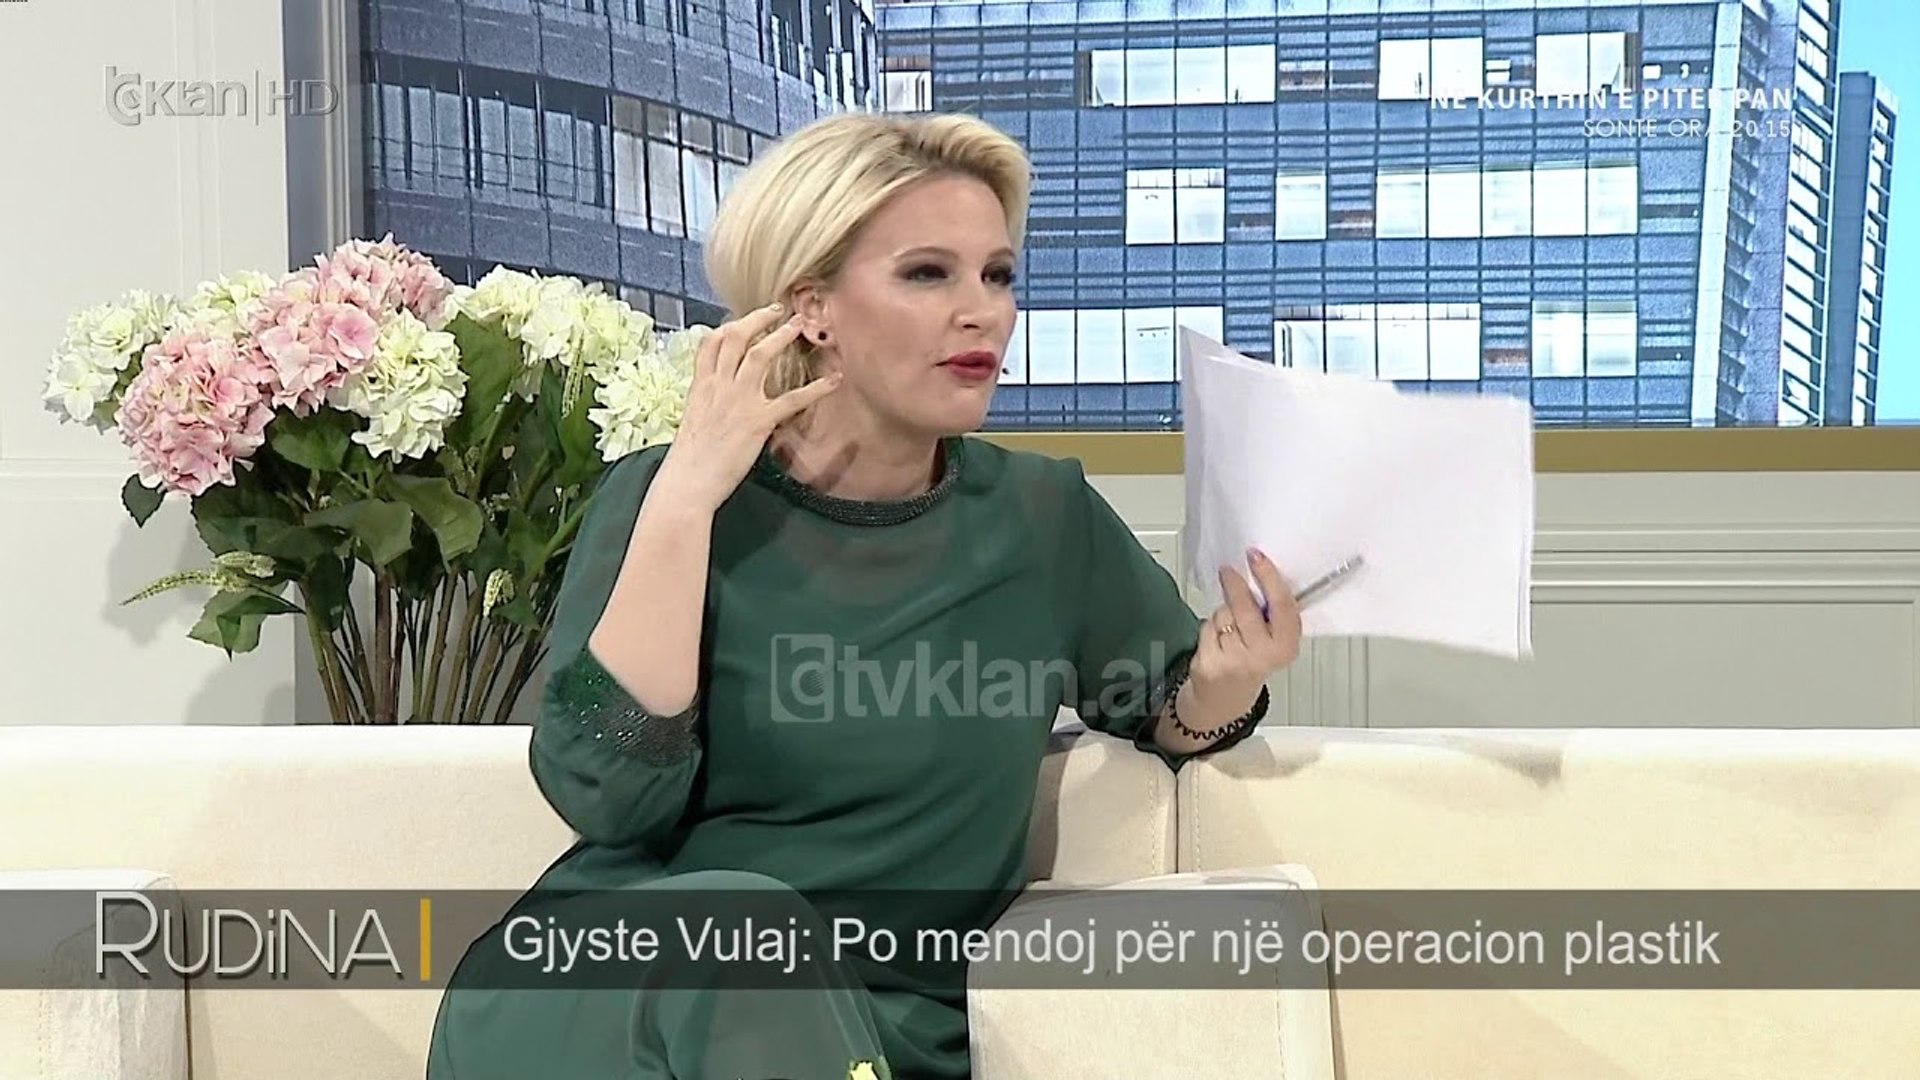 ⁣Rudina/ Gjyste Vulaj pranon ndërhyrjet, po planifikoj operacione plastike (04.06.2018)